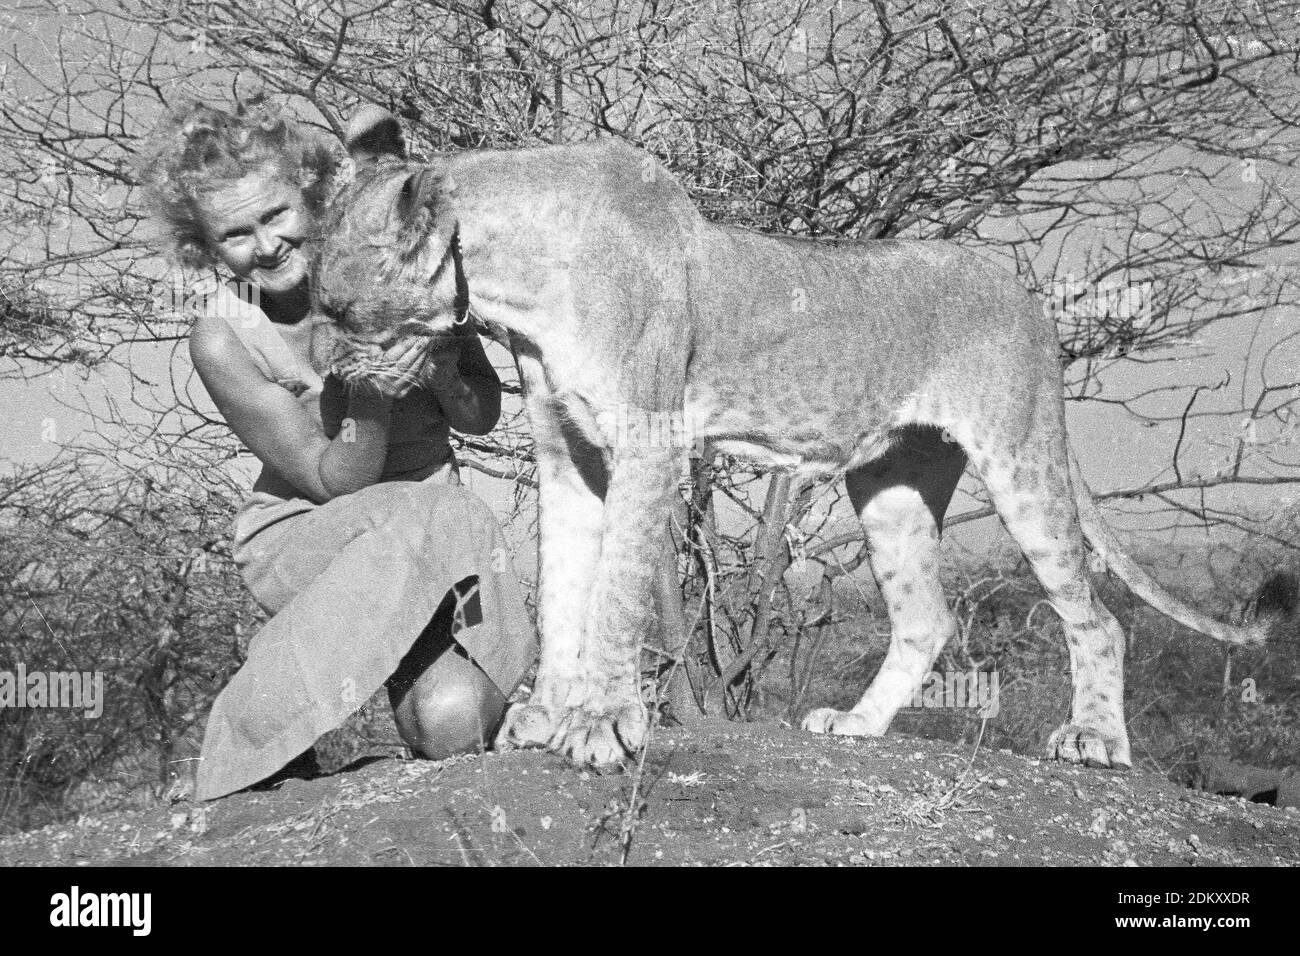 Joy Adamson auteur de Born Free wqith Elsa The leioness au Kenya. Images originales de Joy Adamson Born Free photo Collection prises principalement de 1940 au début des années 1960 au Kenya. Banque D'Images